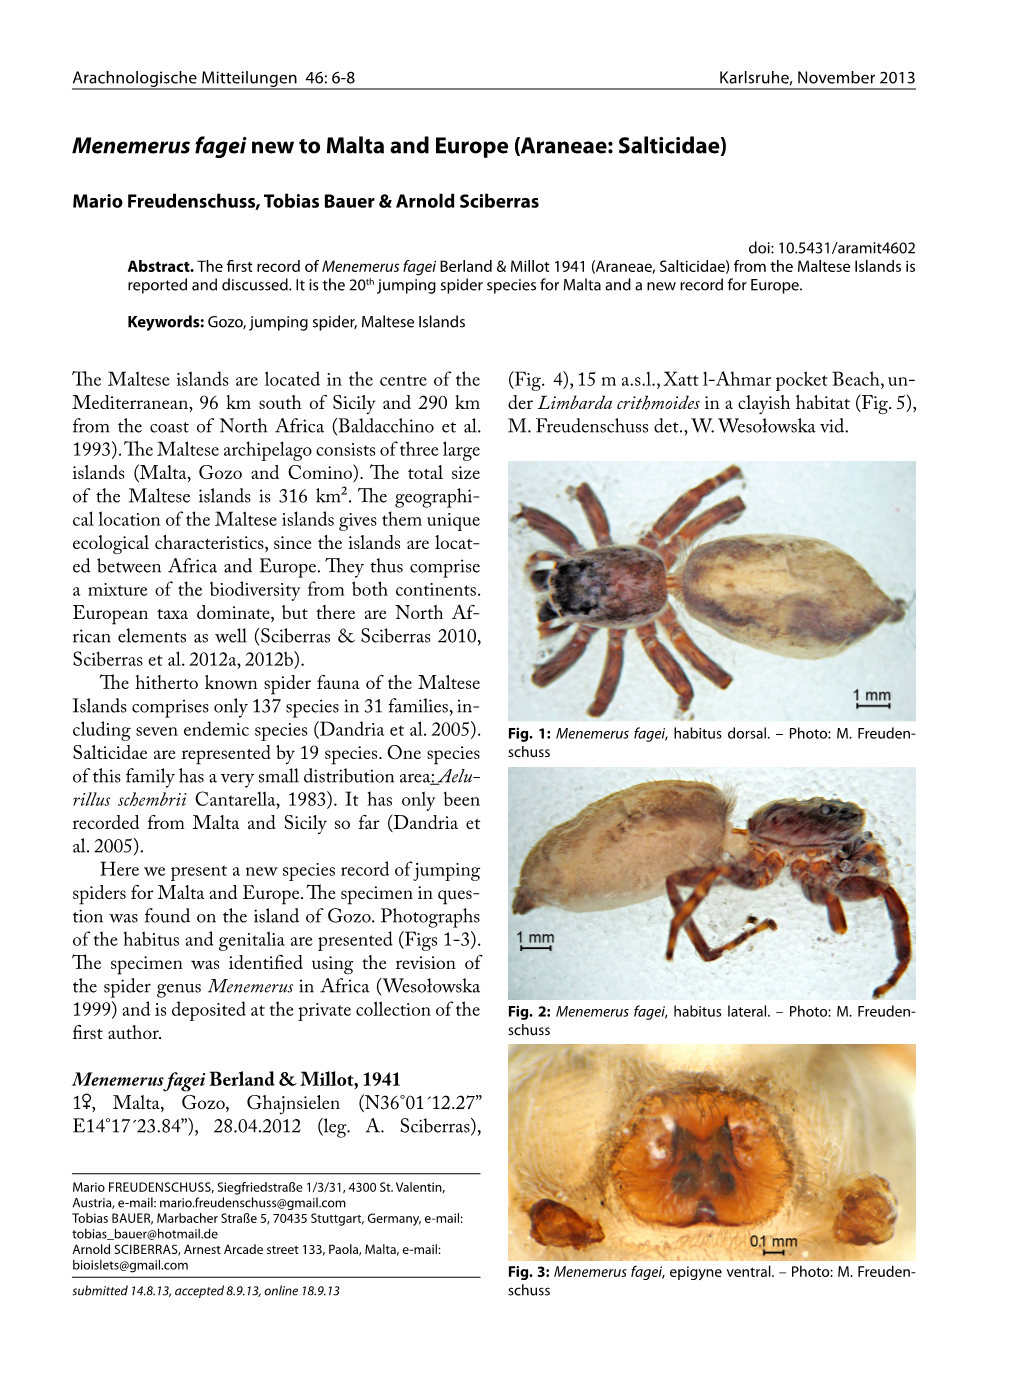 Menemerus Fagei New to Malta and Europe (Araneae: Salticidae)